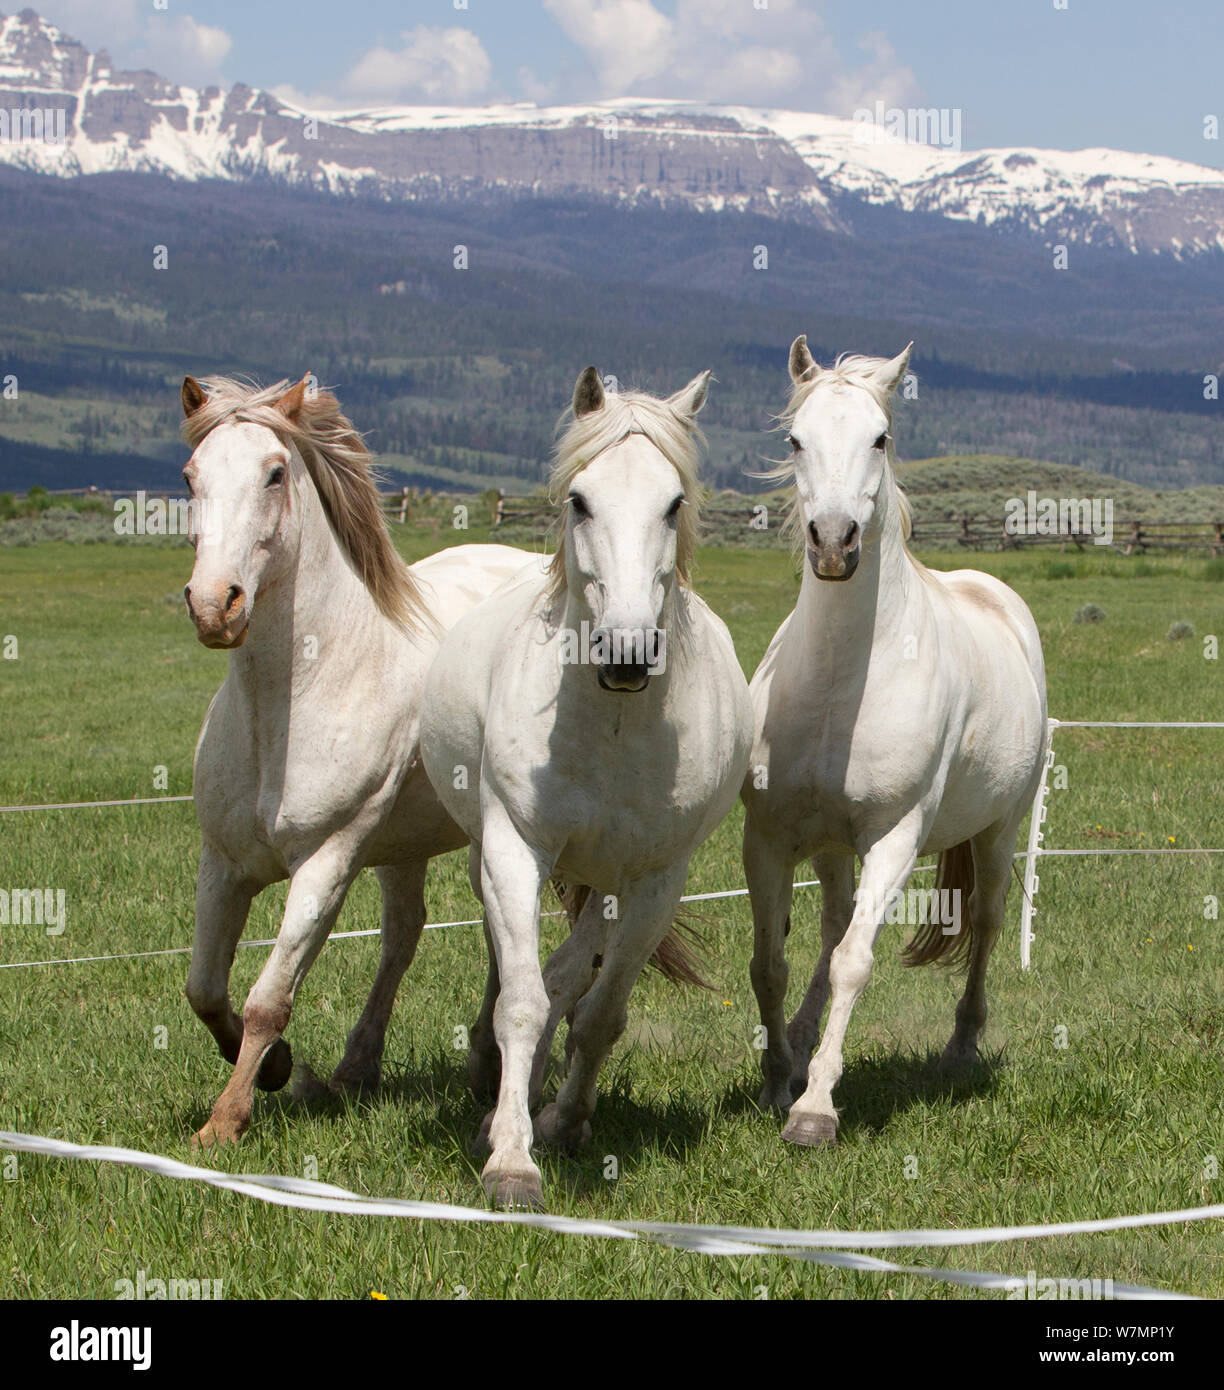 Ngắm nhìn ngựa xám tuyệt đẹp của Wyoming khiến bạn phải trầm trồ và say mê. Với thảm cỏ xanh mượt mà và những dãy núi hùng vĩ làm nền, bức ảnh này sẽ mang đến cho bạn một cái nhìn đầy cảm hứng và yên bình.